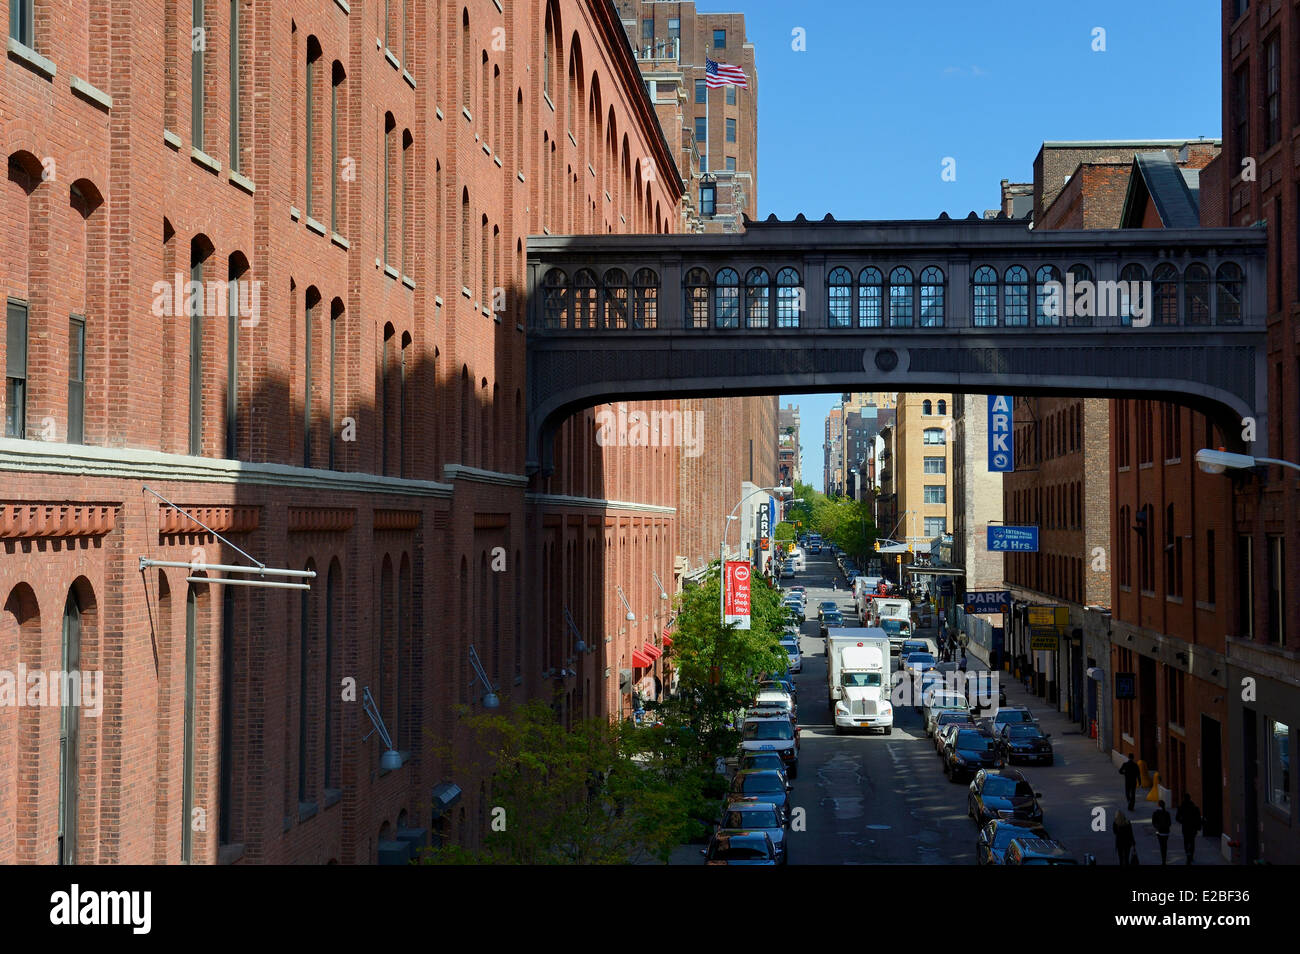 Vereinigte Staaten, New York City, Manhattan, Meatpacking District (Gansevoort Market), Steg an der Chelsea Market aufbauend auf Stockfoto